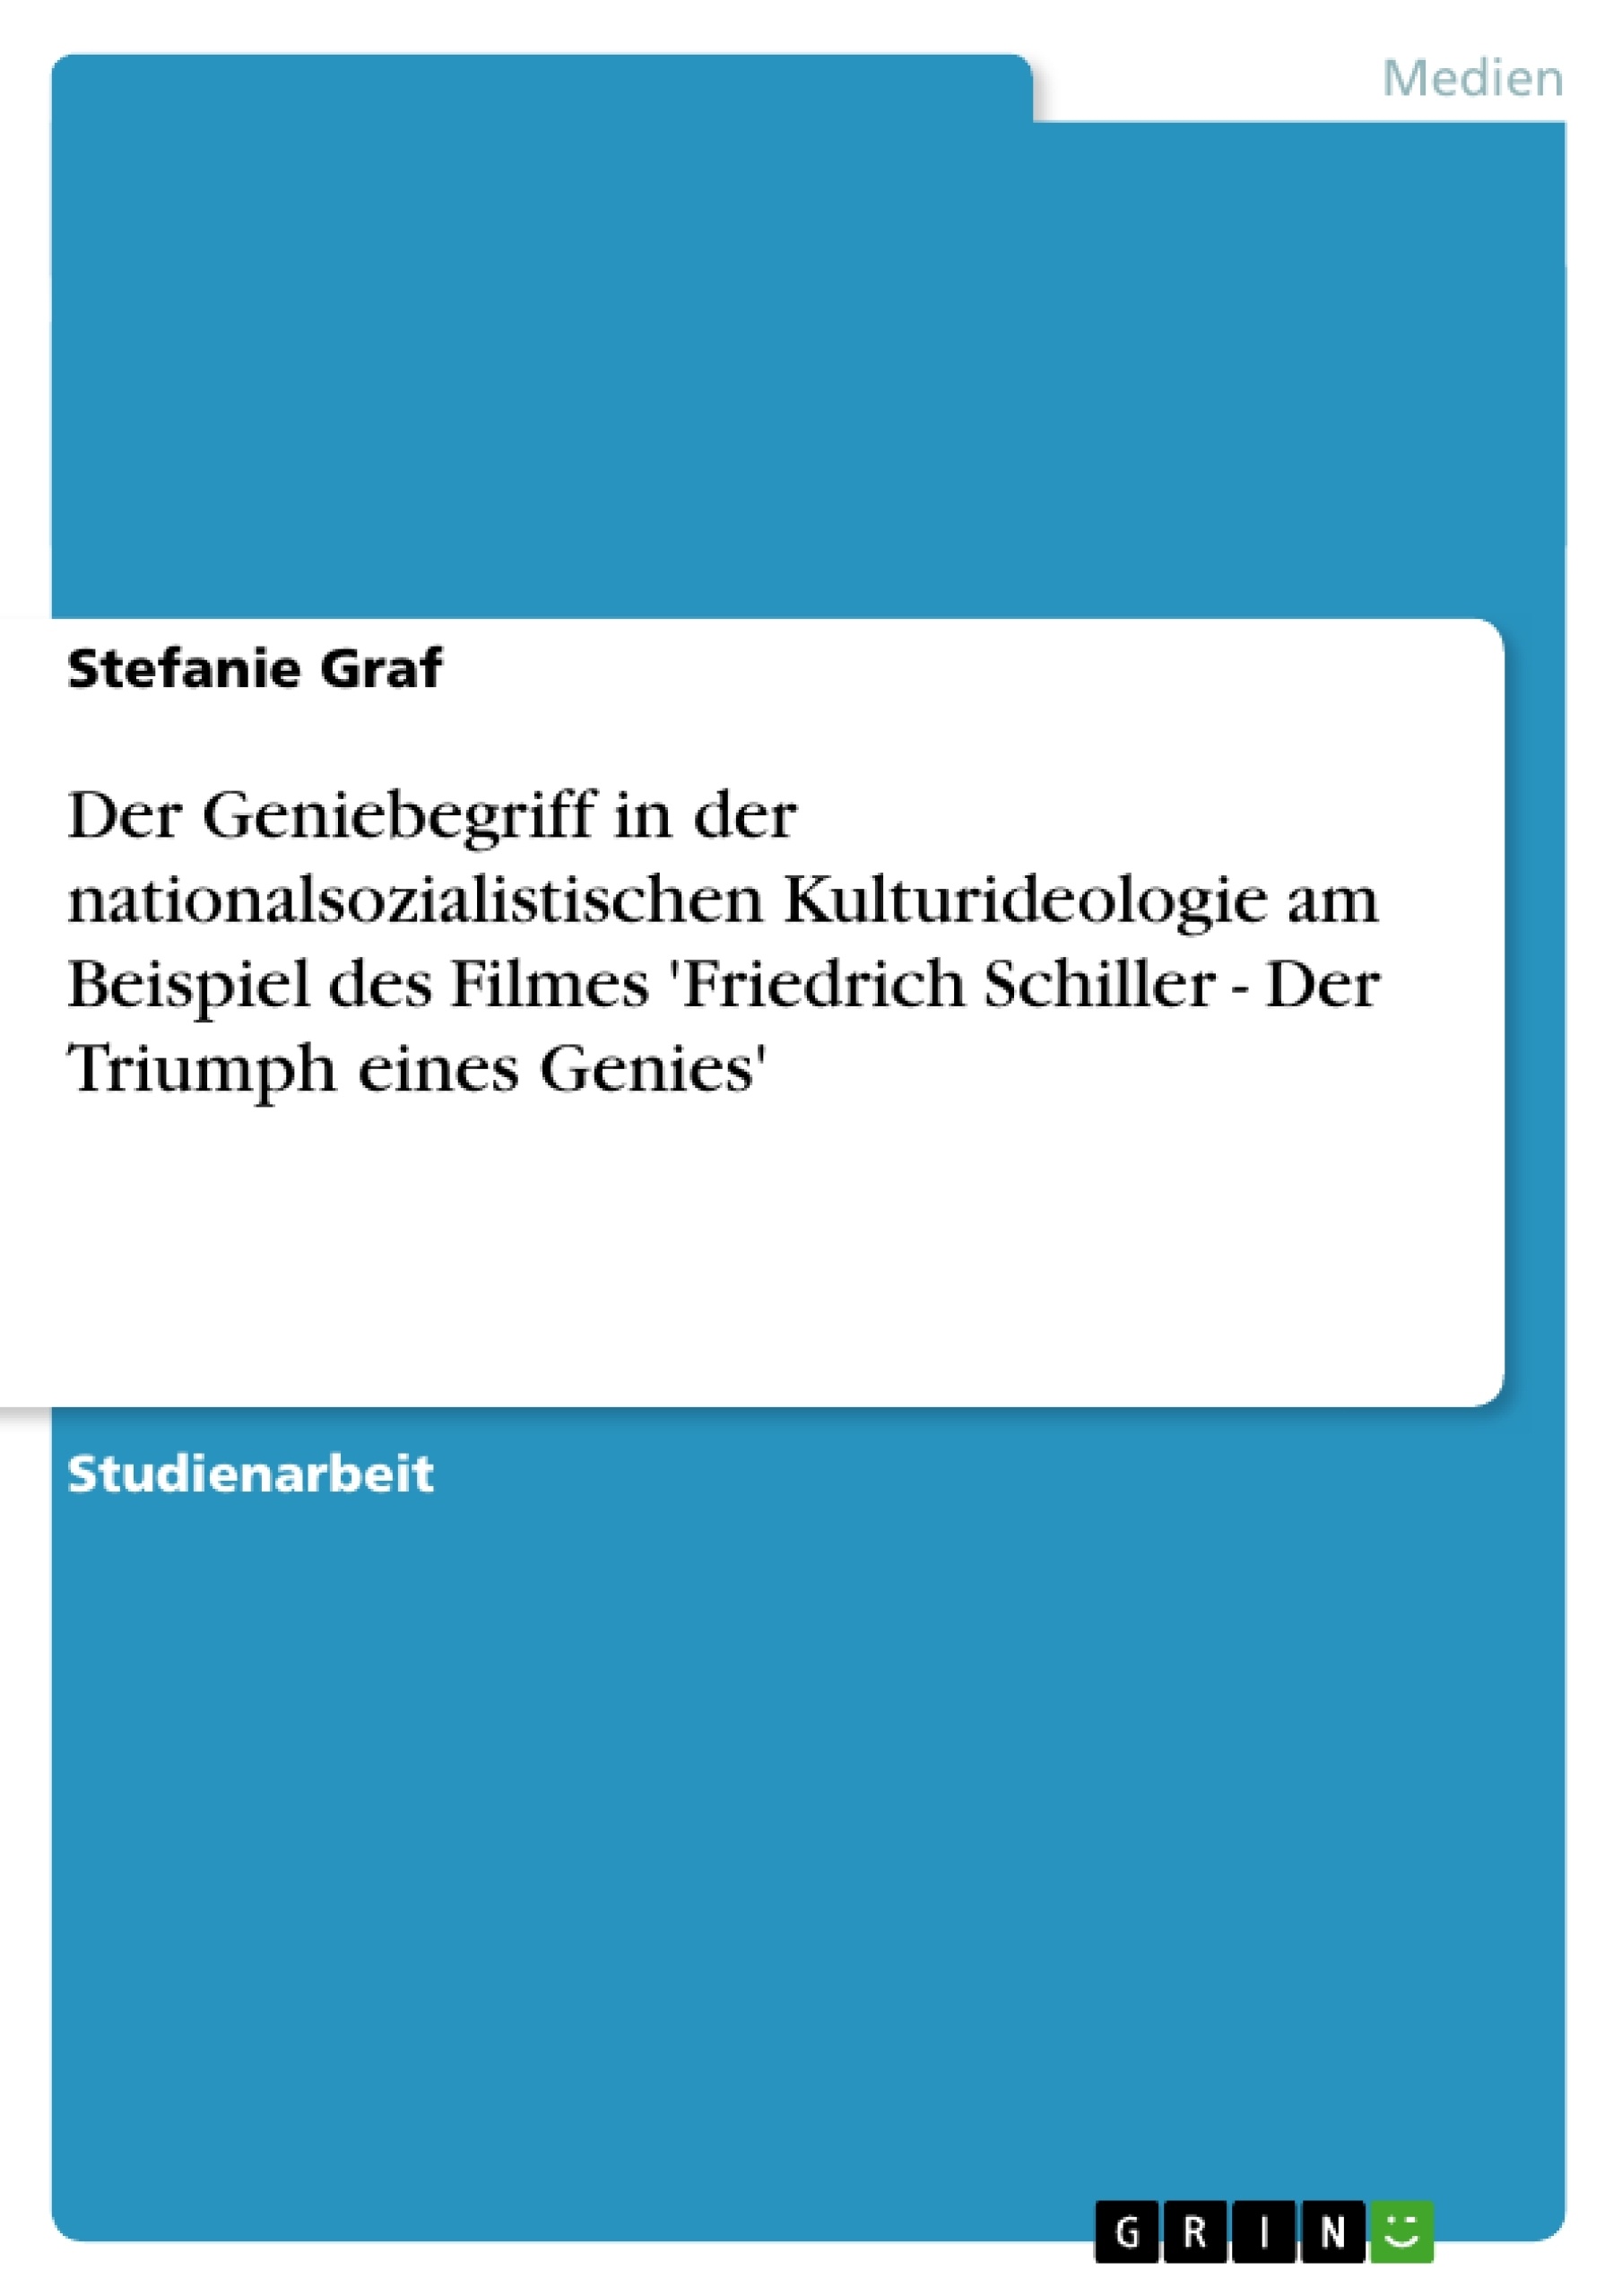 Title: Der Geniebegriff in der nationalsozialistischen Kulturideologie am Beispiel des Filmes 'Friedrich Schiller - Der Triumph eines Genies'